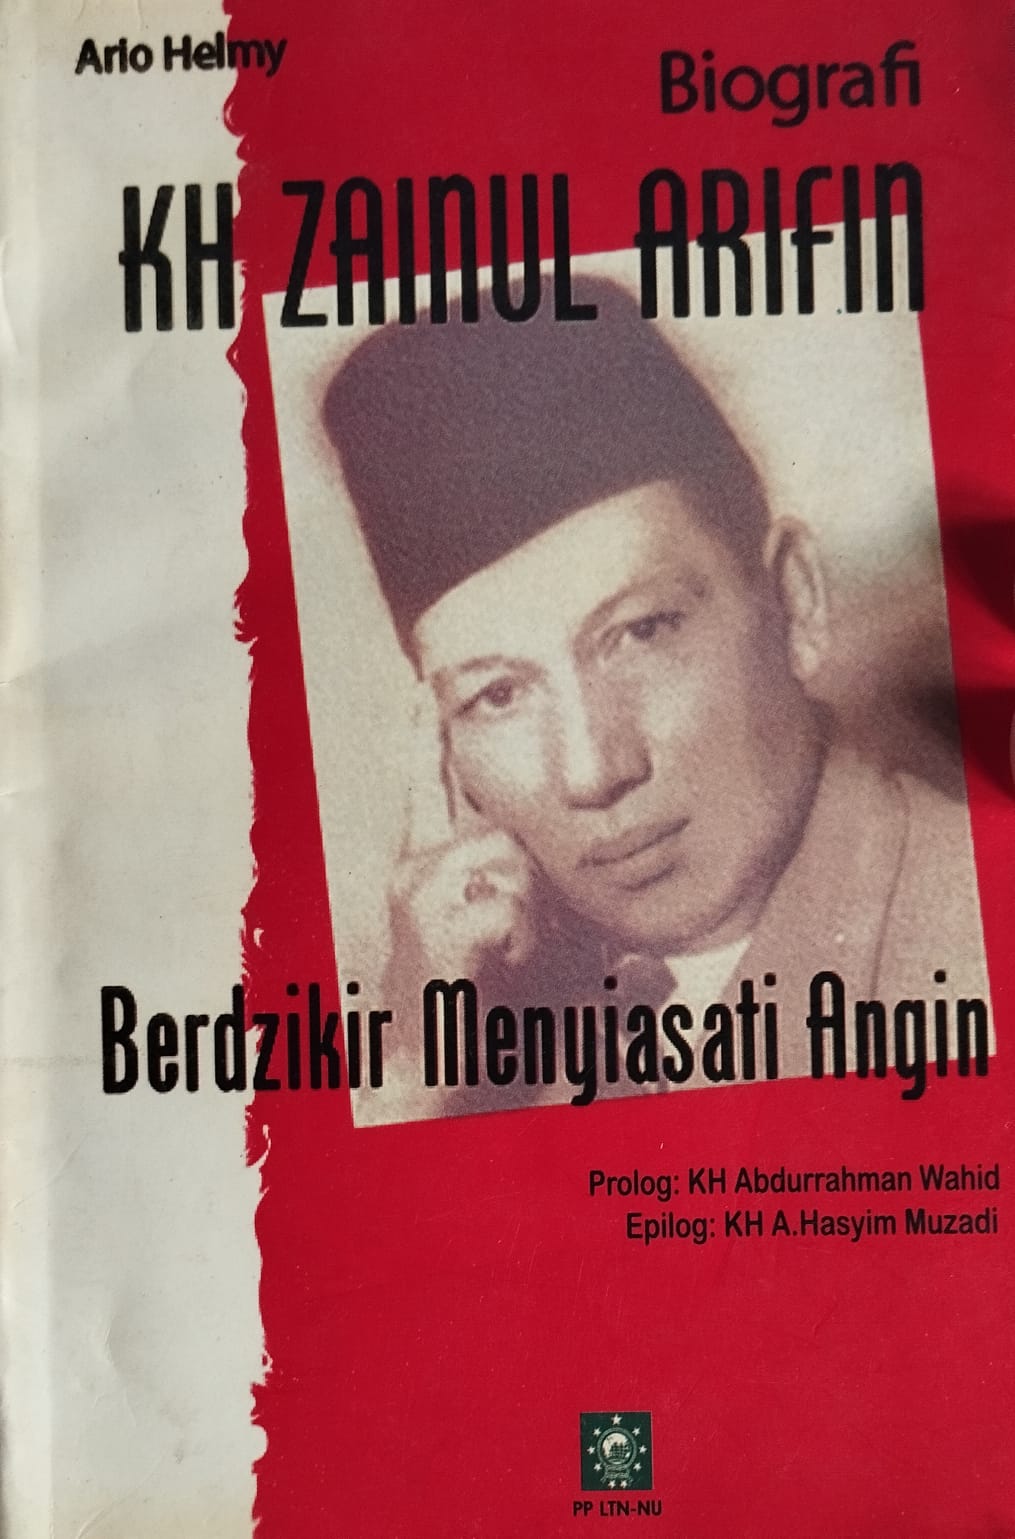 Biografi KH. Zainul Arifin